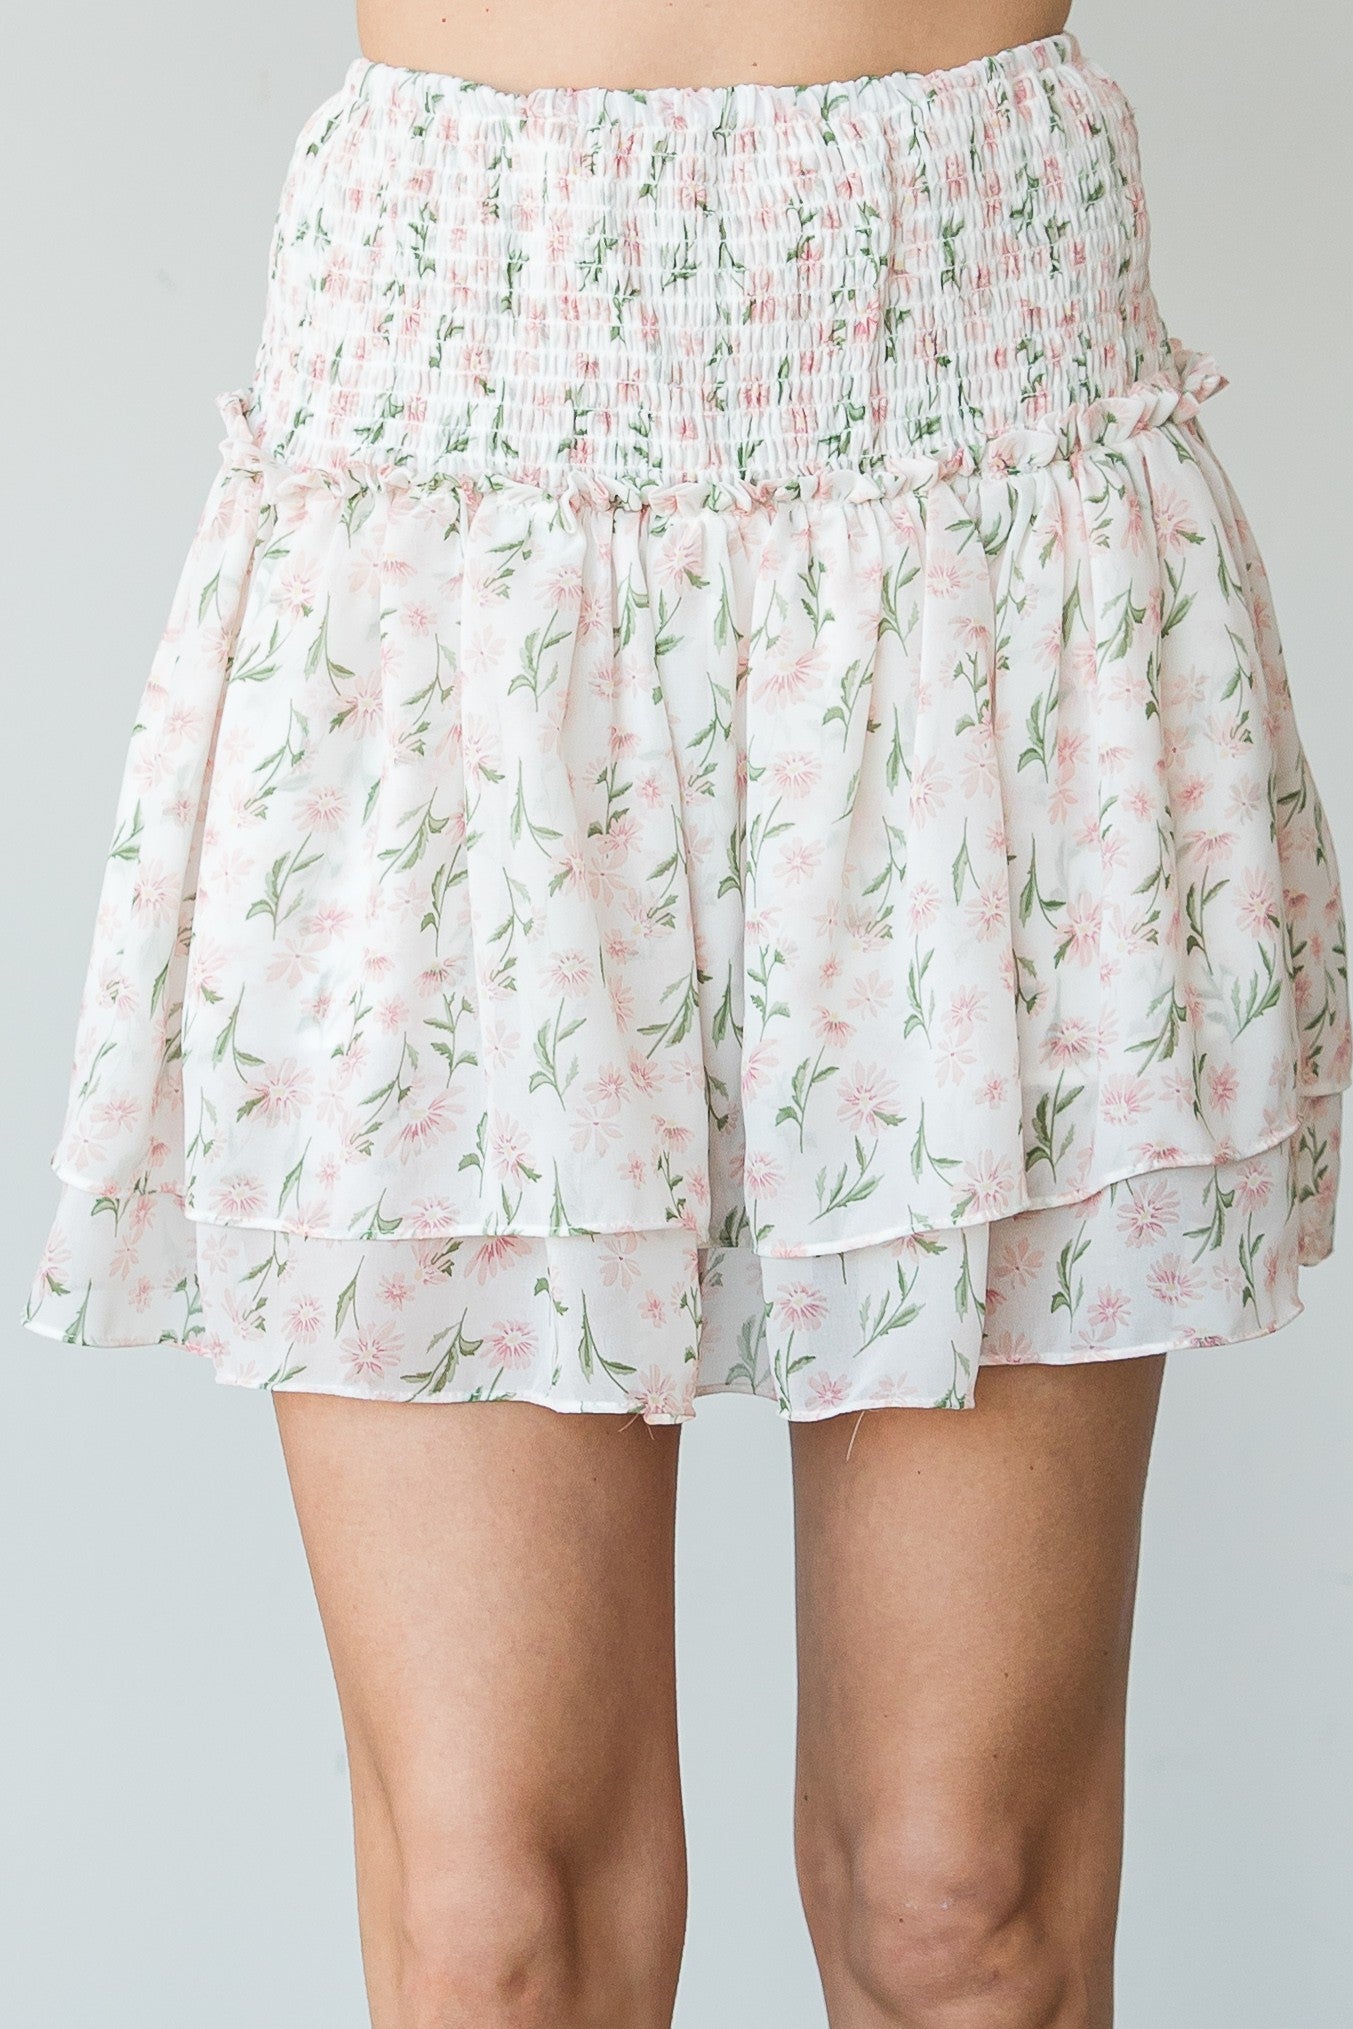 Spring Spring Skirt